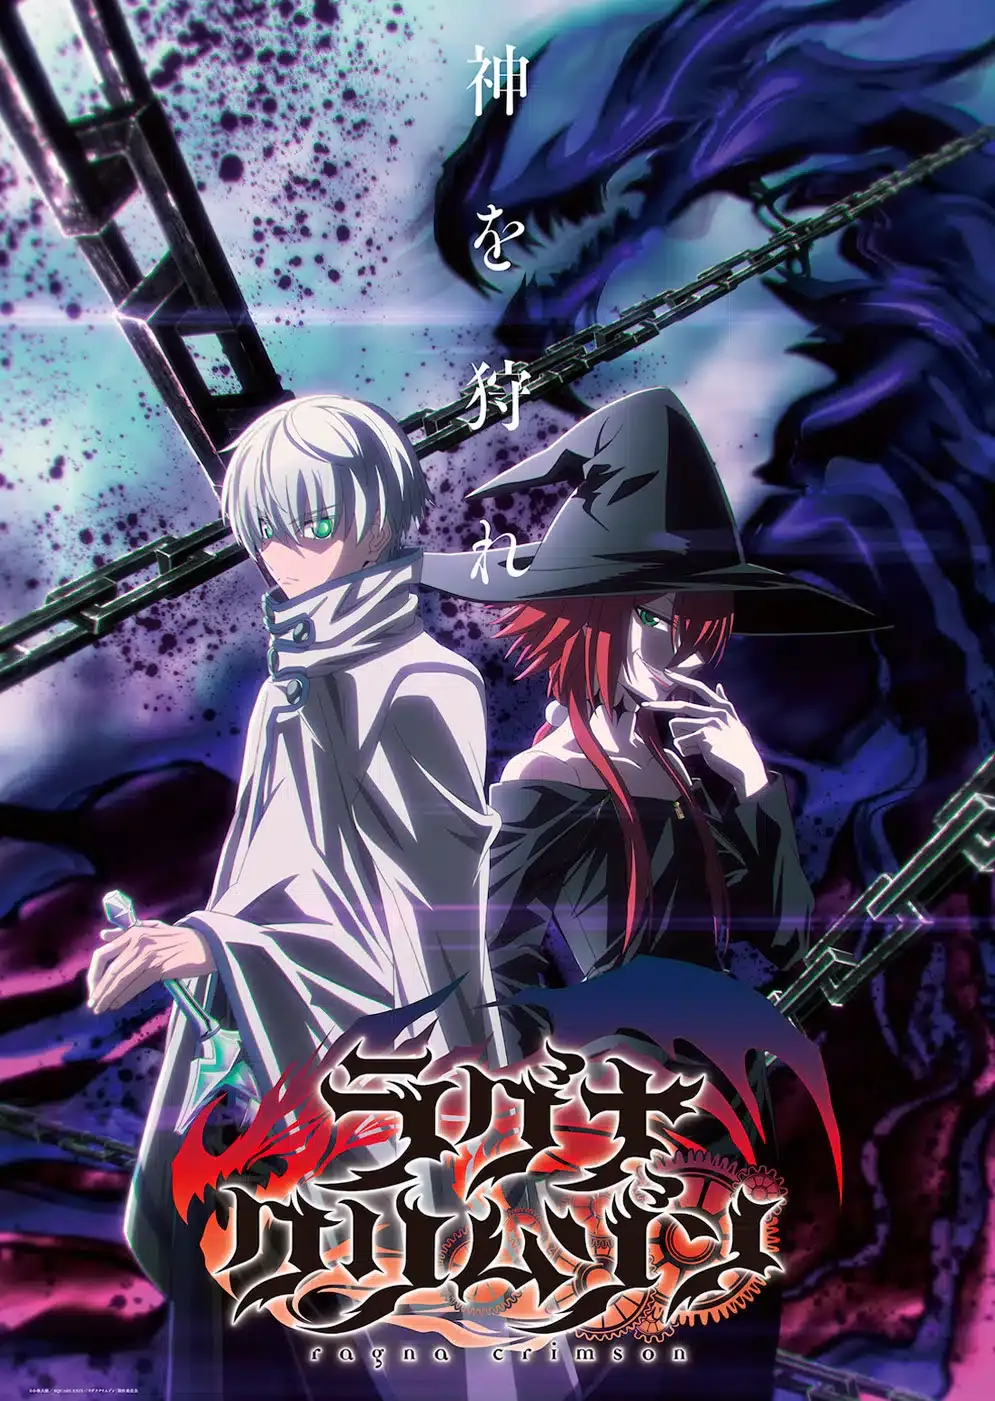 O anime Ragna Crimson divulgou seu primeiro trailer